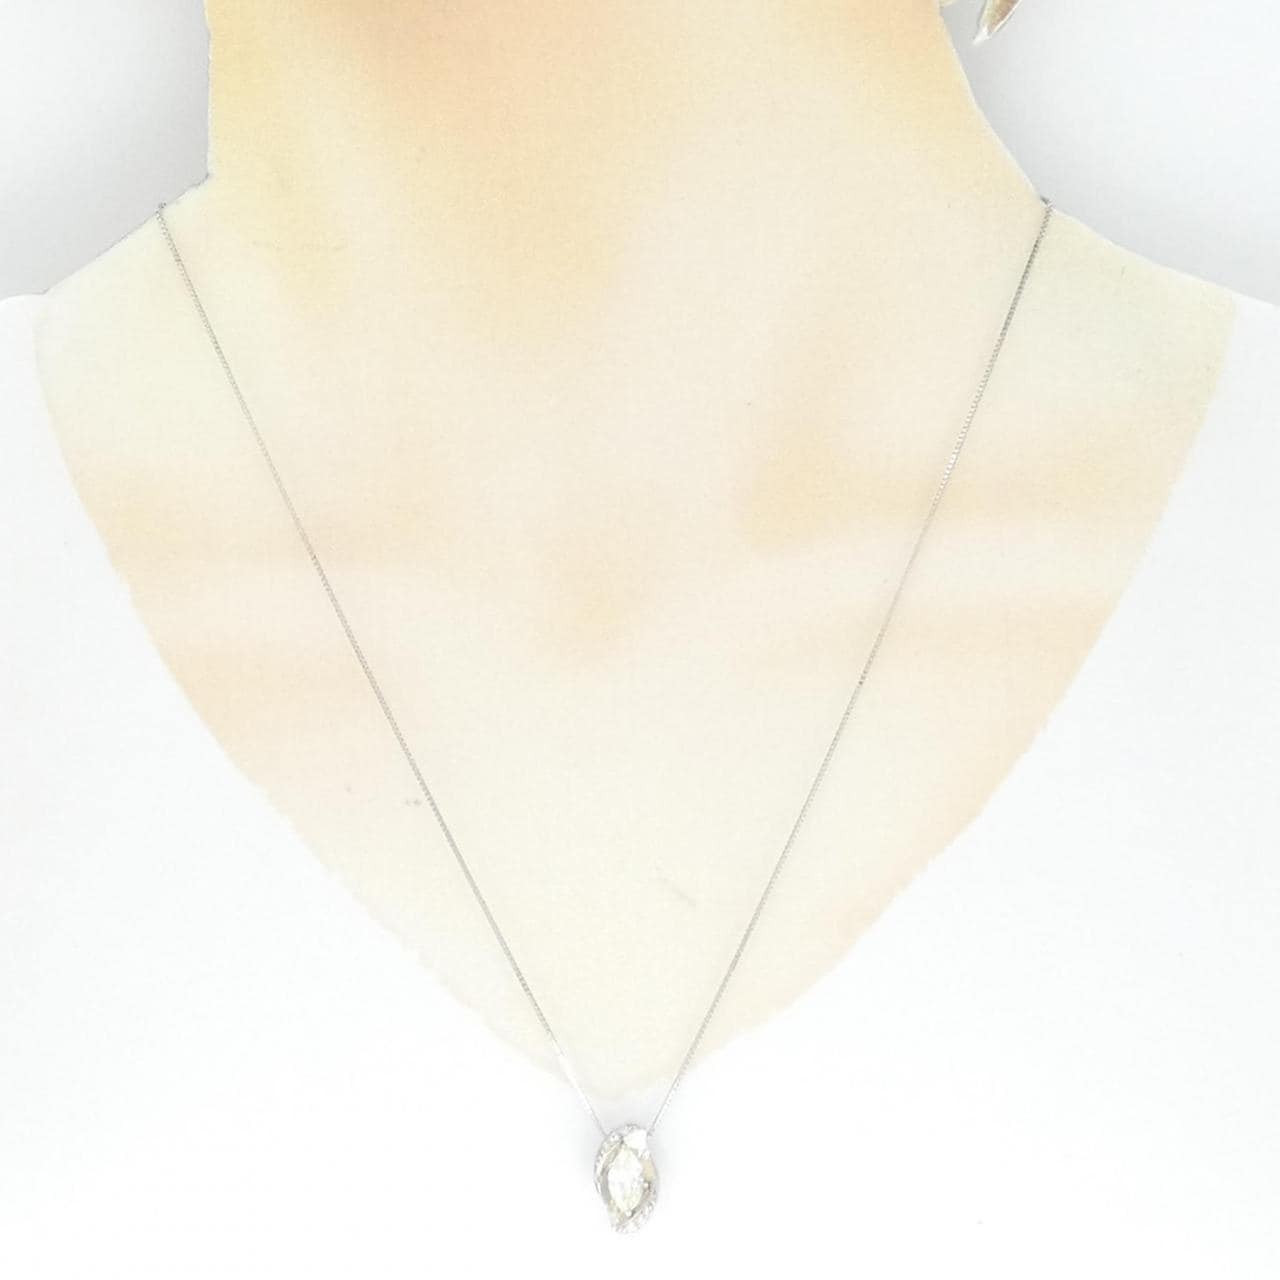 PT Diamond Necklace 0.704CT L VS2 Marquise Cut